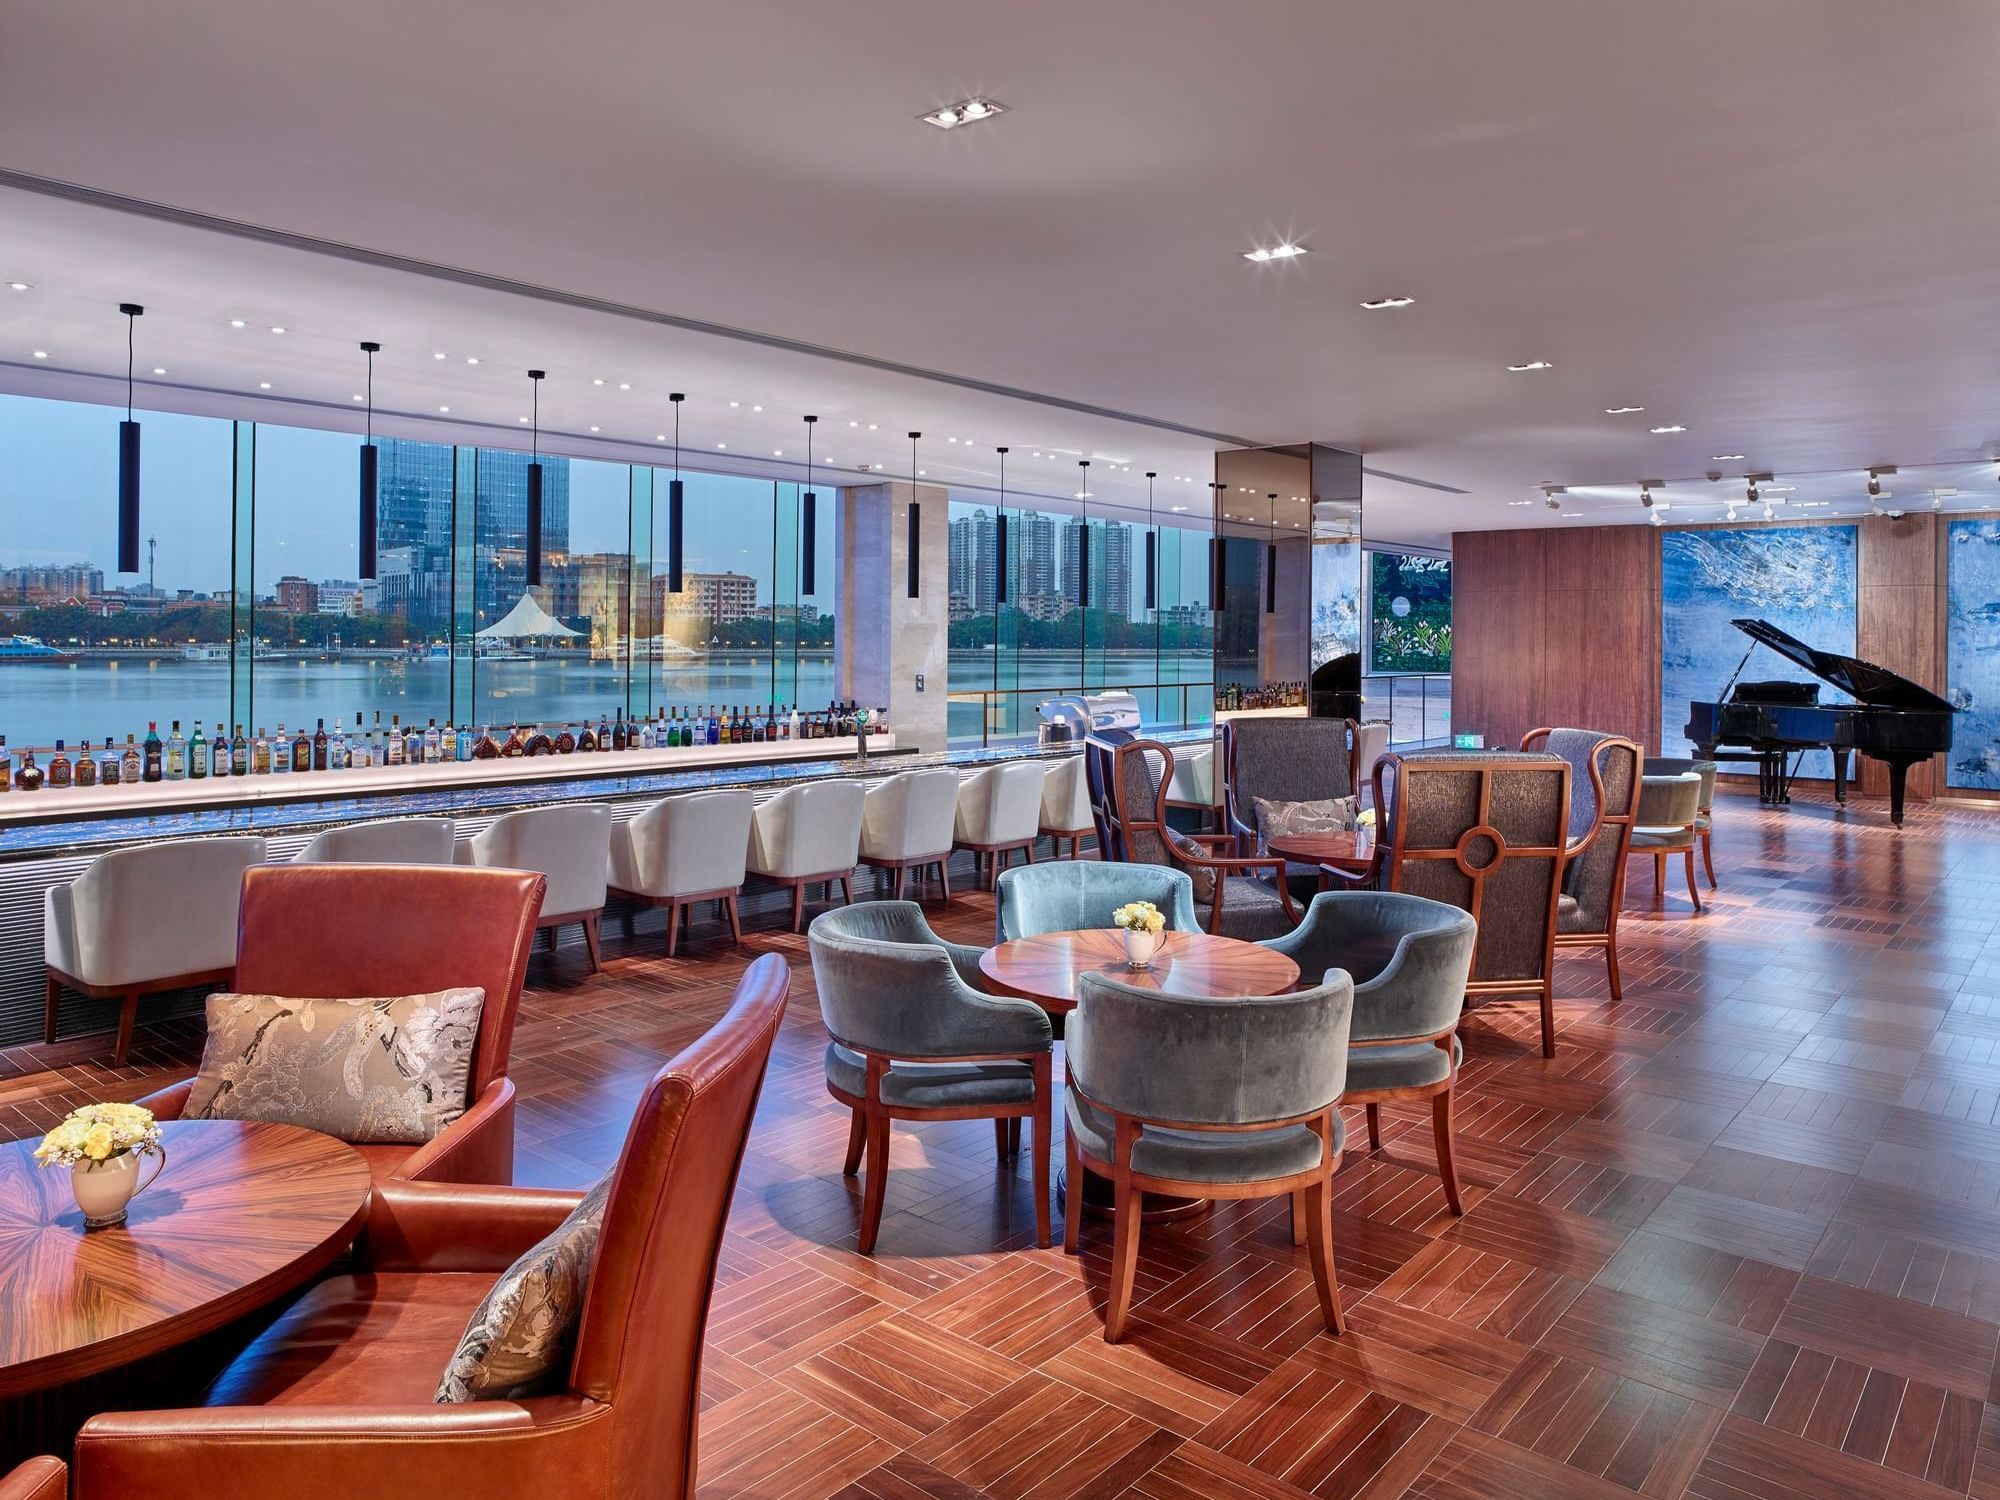 澳博娱乐游戏官网平台 Lobby Lounge dining area with a city view at 澳博娱乐游戏